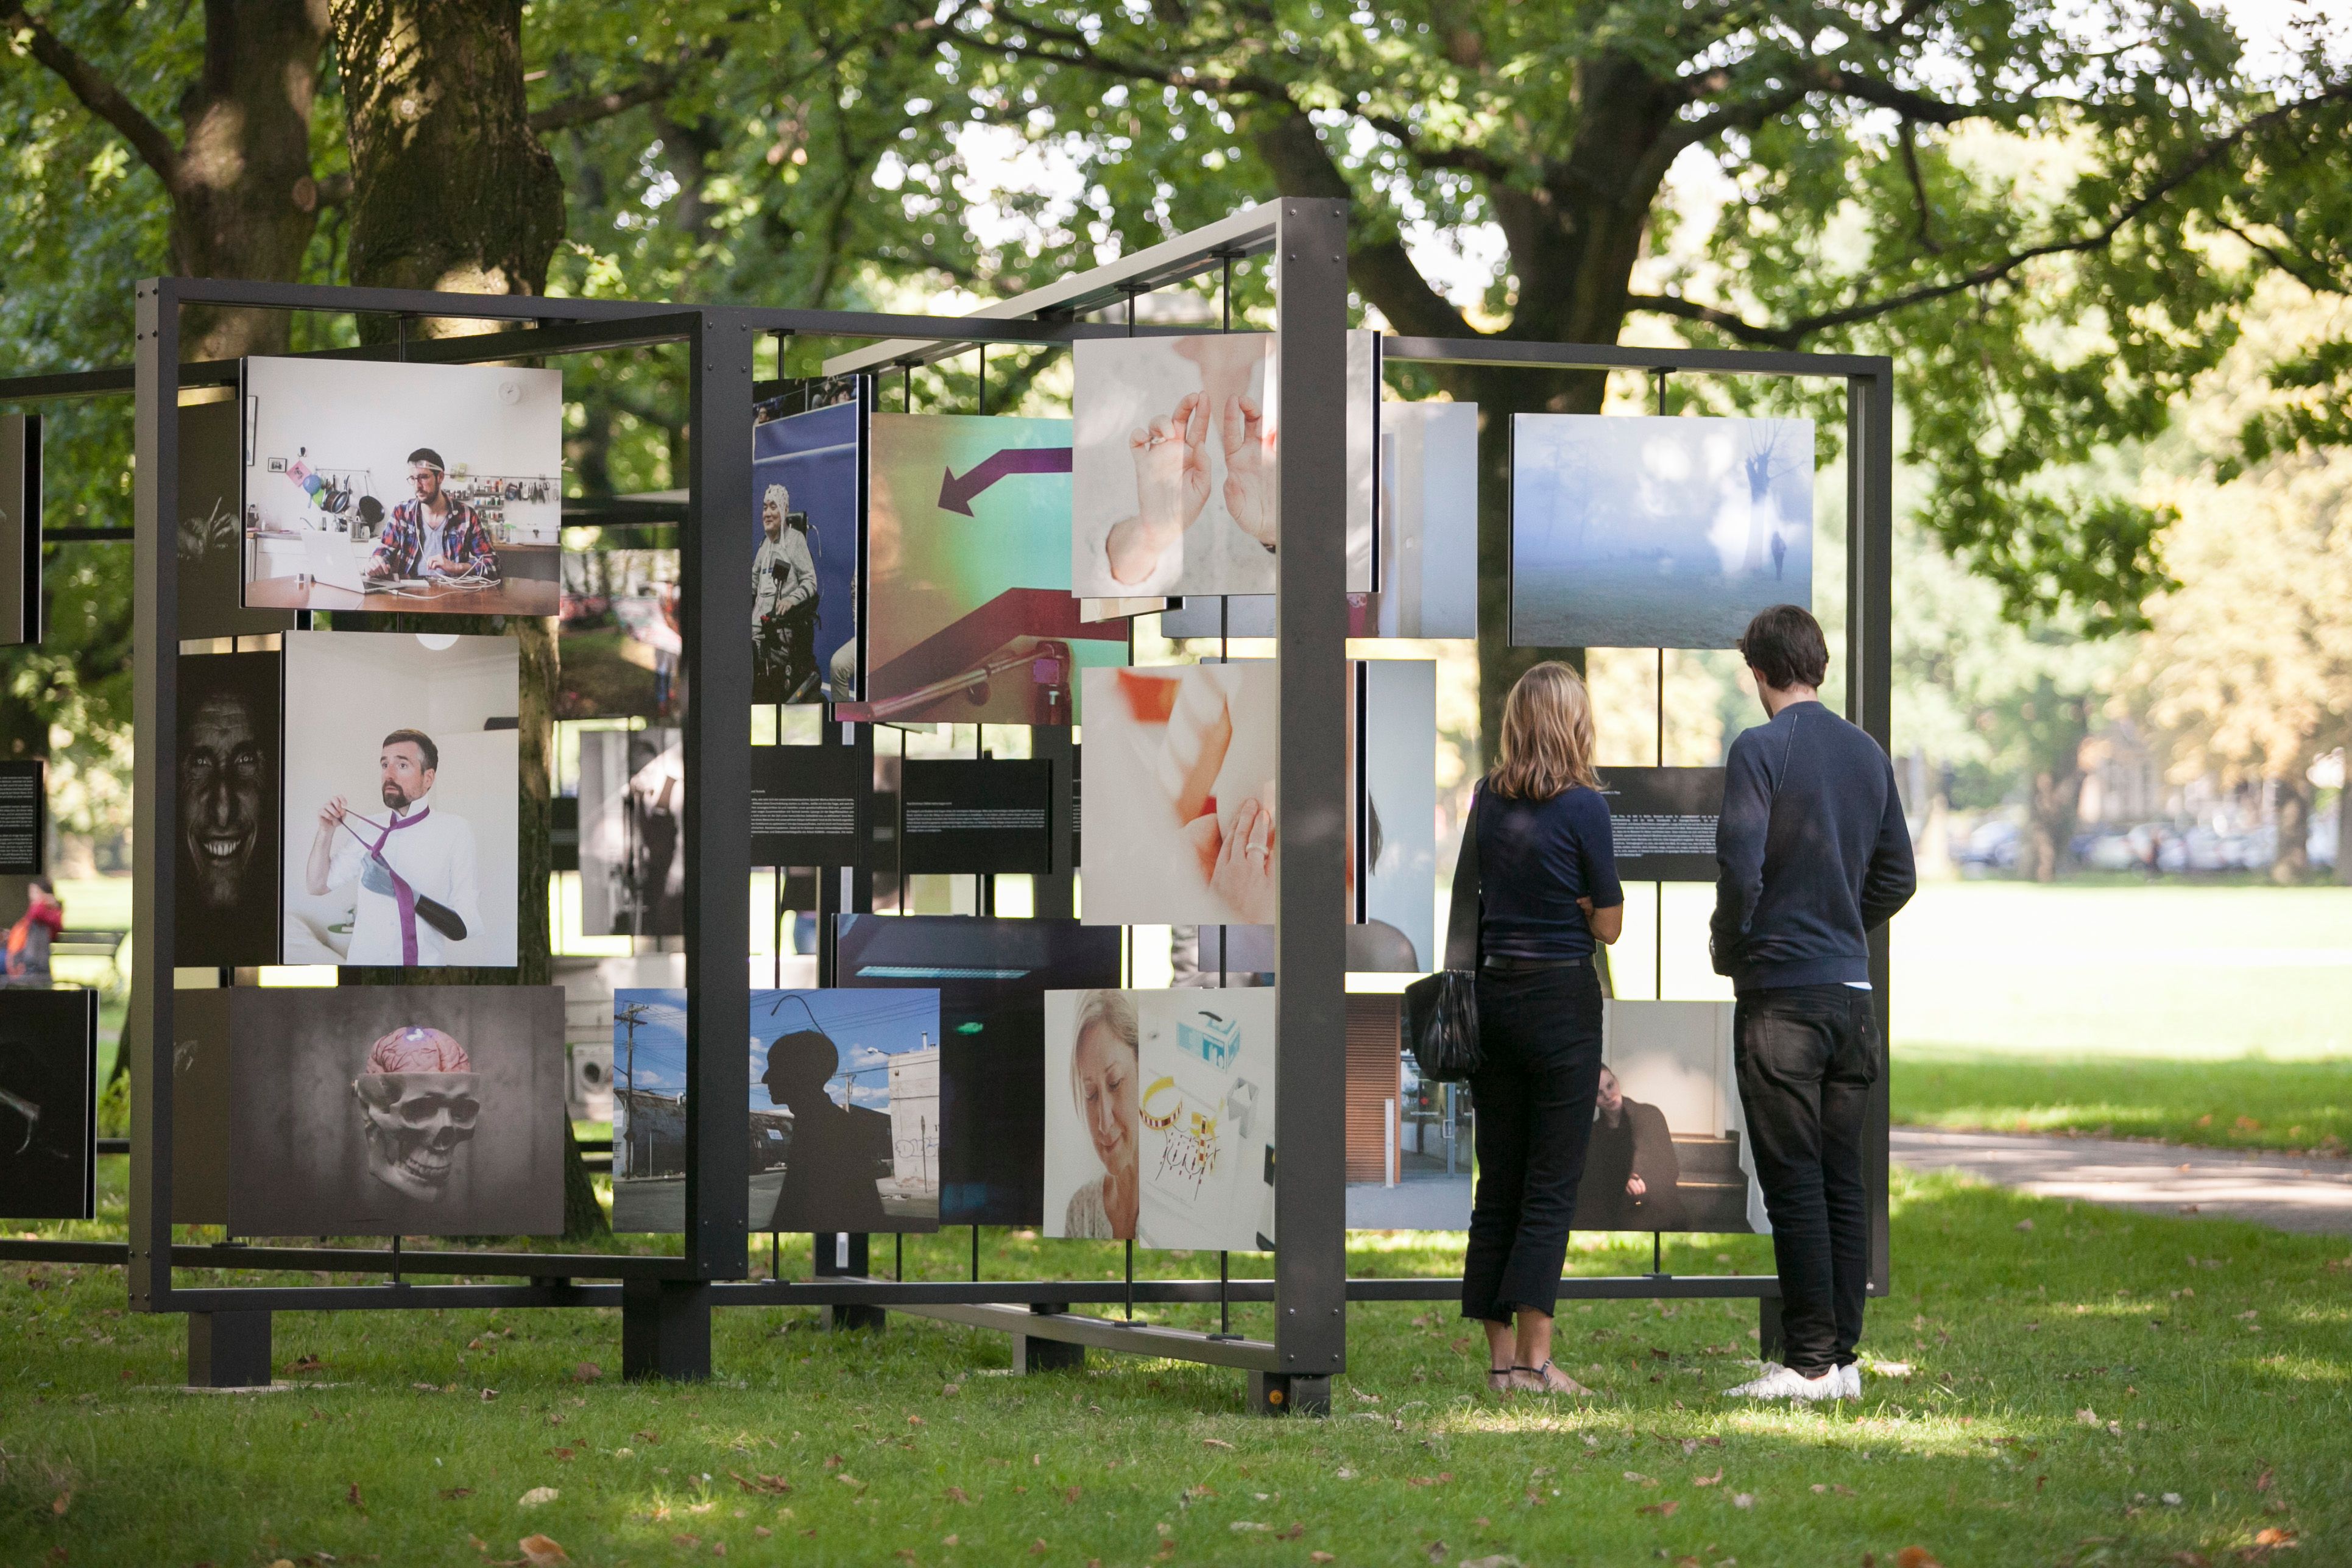 Zwei Personen auf einer Open-Air-Fotoausstellung, die auf großen drehbaren Tafeln präsentiert wird